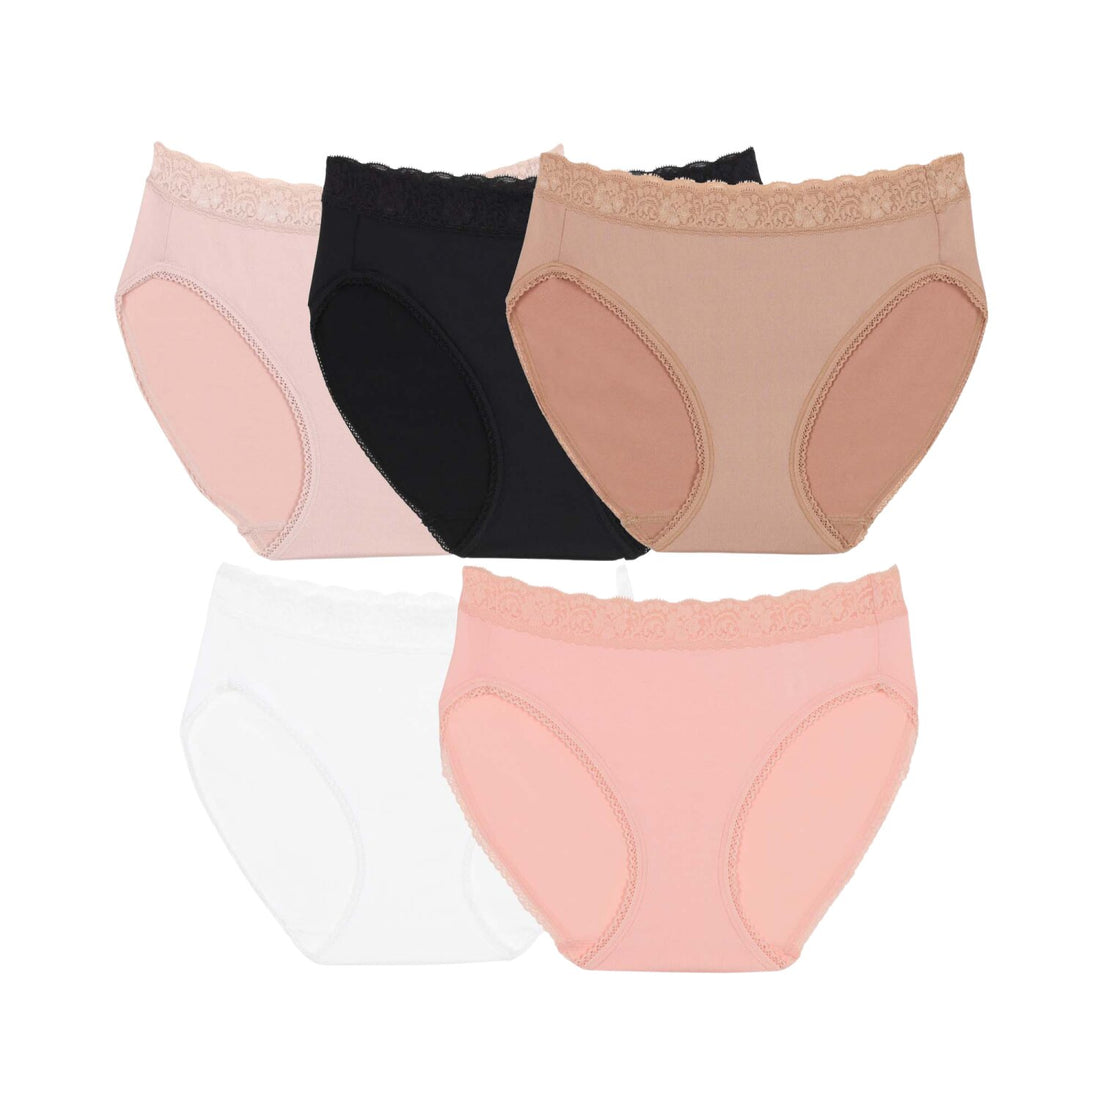 Wacoal Panty pack กางเกงในใส่สบาย รูปแบบบิกินี่ set 5 ชิ้น รุ่น WU1F35 คละสี (สีเบจ-สีดำ-สีชมพูอมส้ม-สีครีม-สีโอวัลติน)